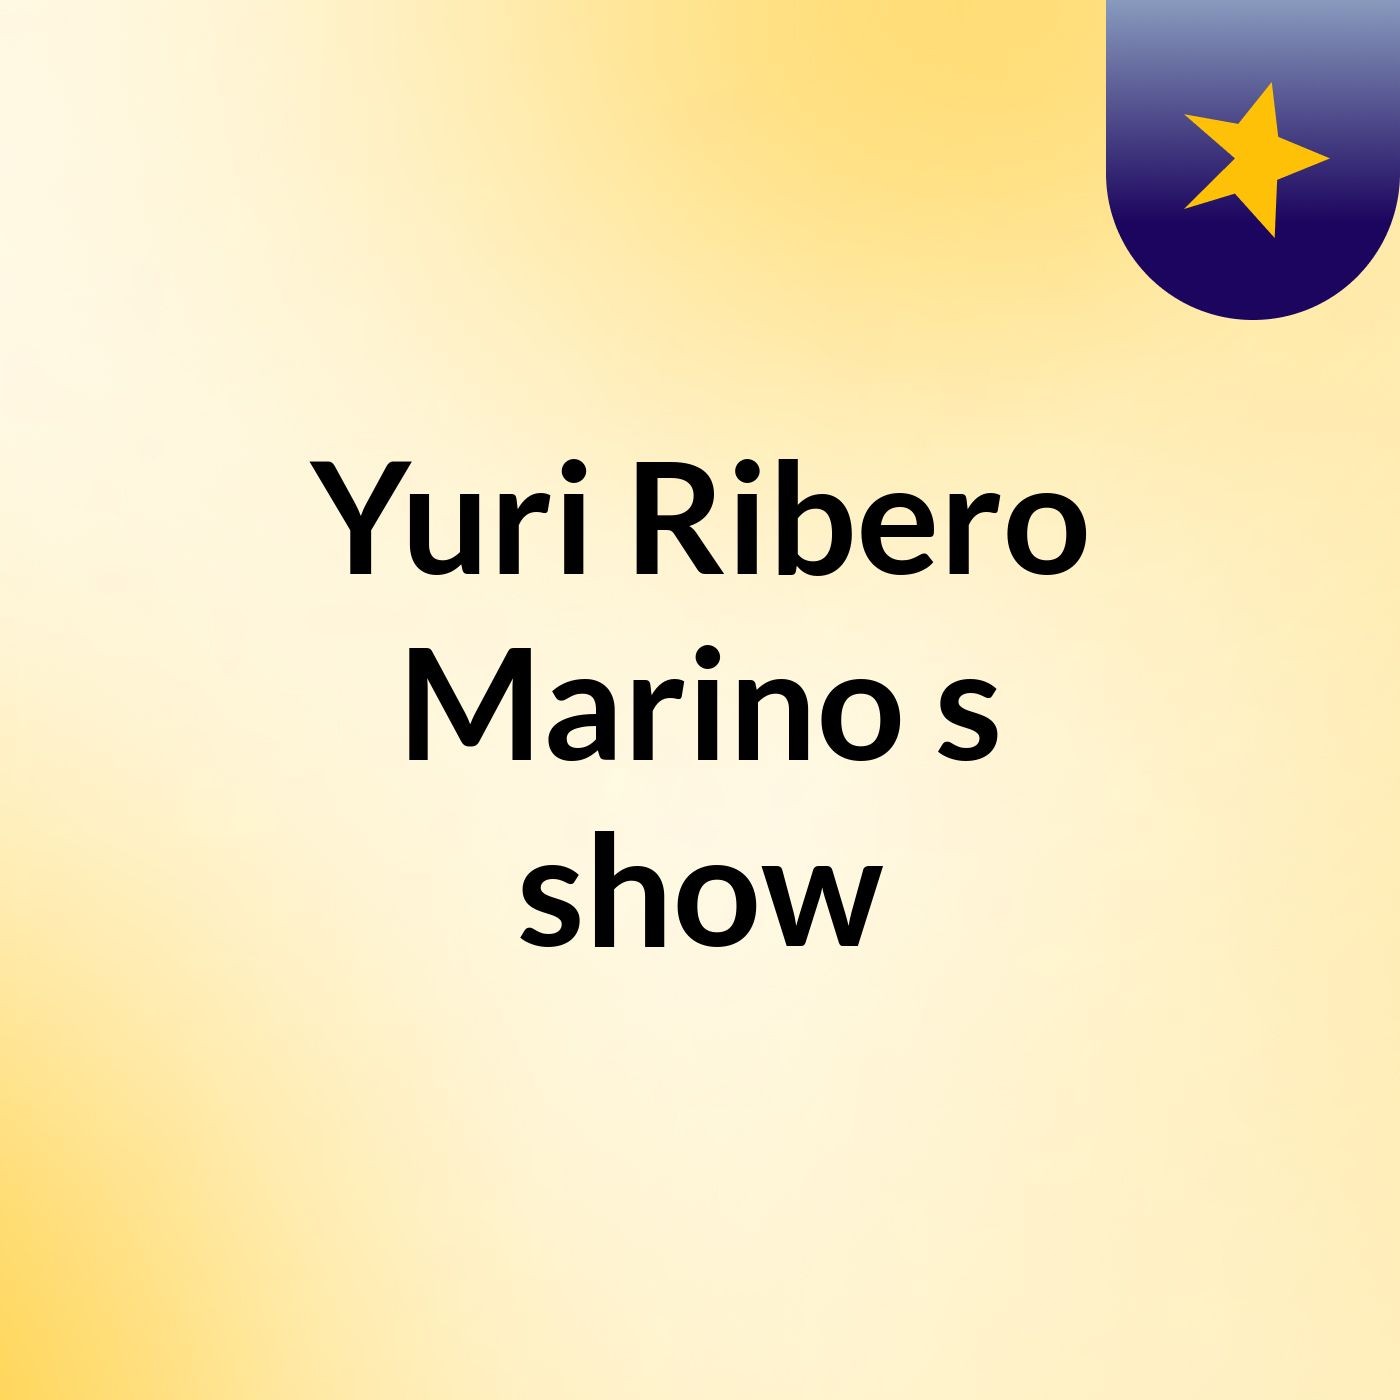 Yuri Ribero Marino's show